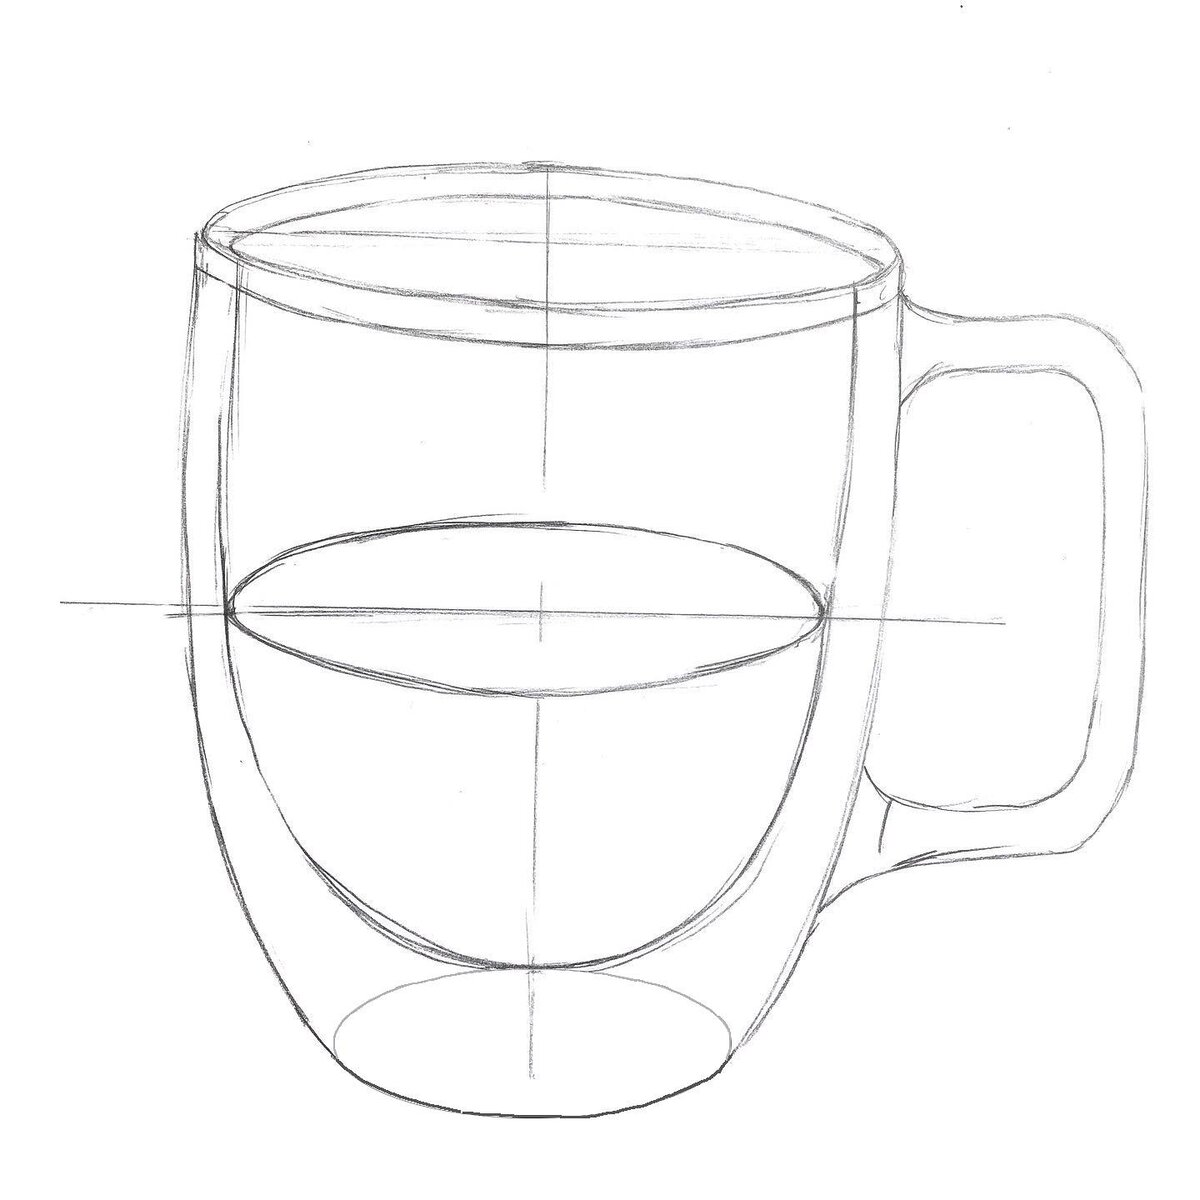 How to Draw a Cute Cup of Coffee Simple. ☕ Как нарисовать стакан чашку кофе просто.